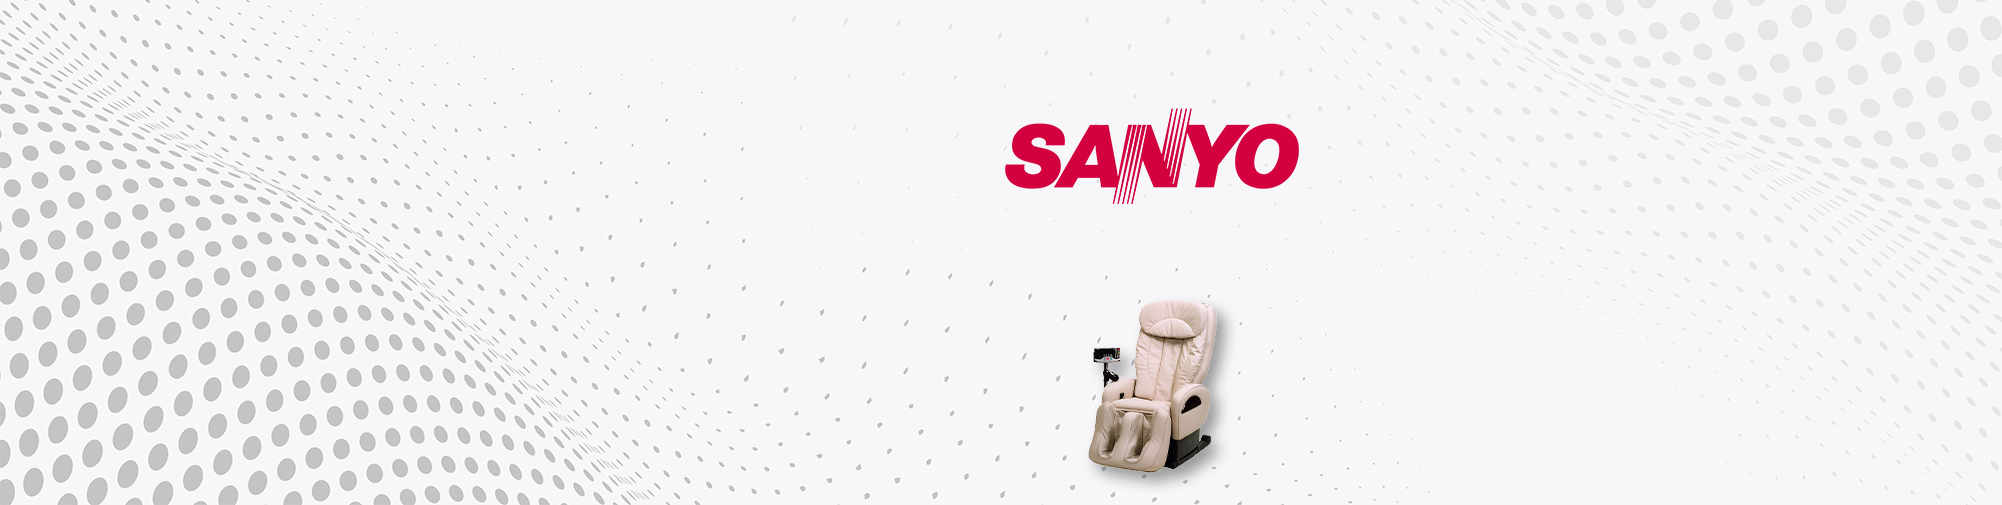 SanYO - जापानी ब्रांड कंपनी | मालिश कुर्सी की दुनिया